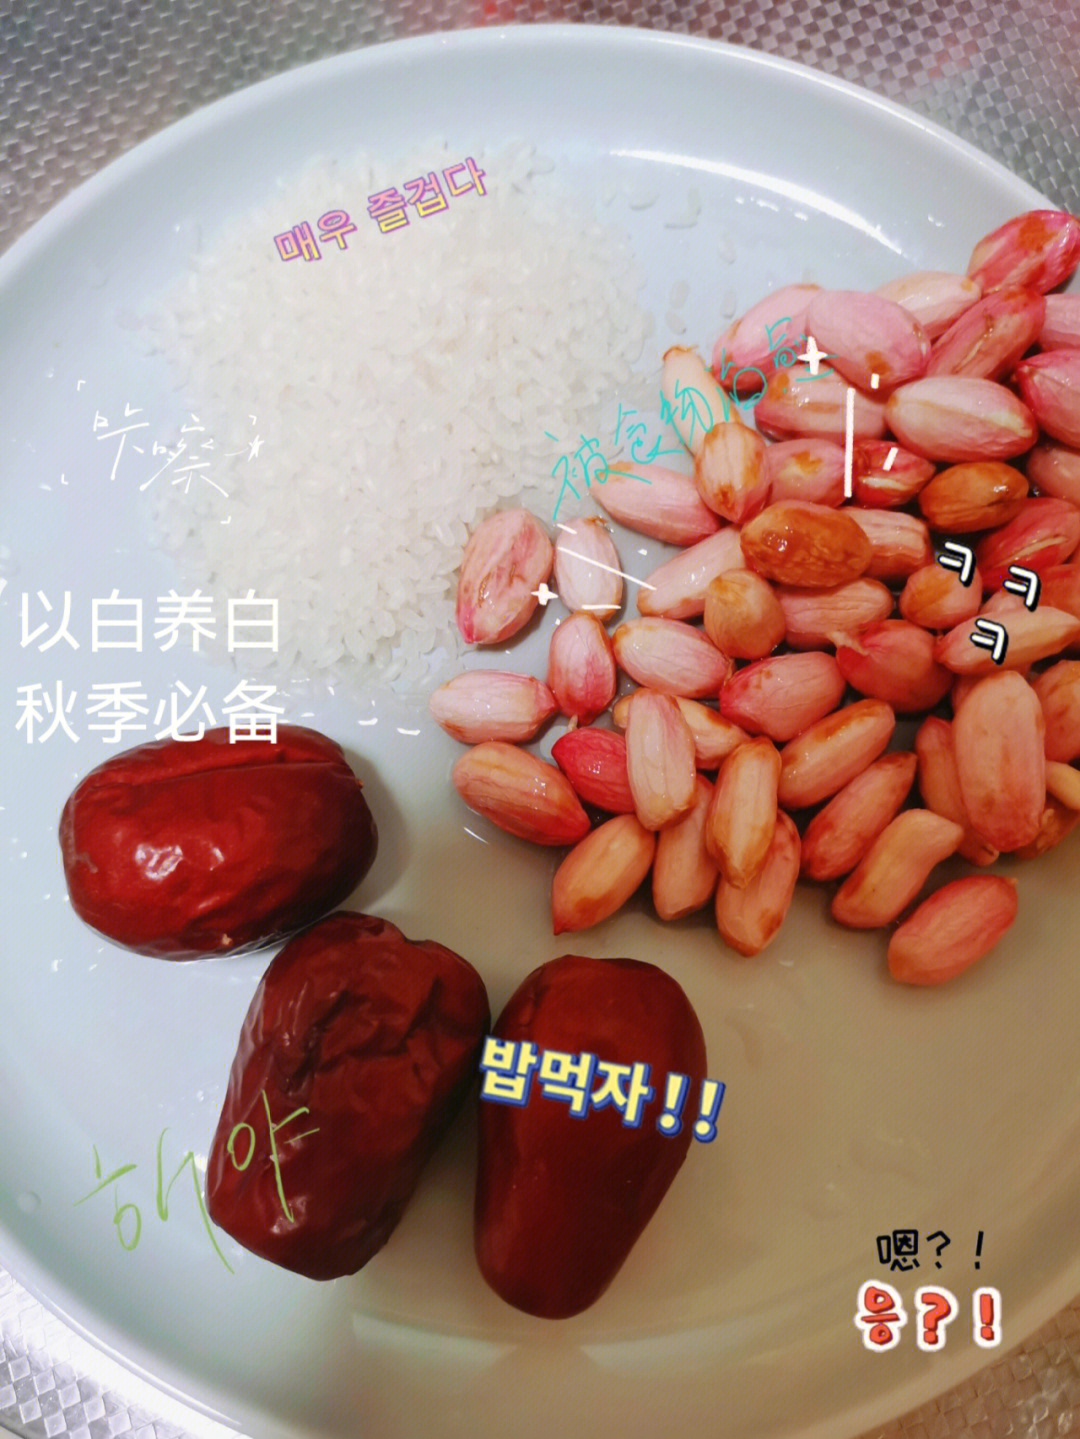 99食材:花生一小把  红枣三颗   糯米或大米一小把操作方法:放入